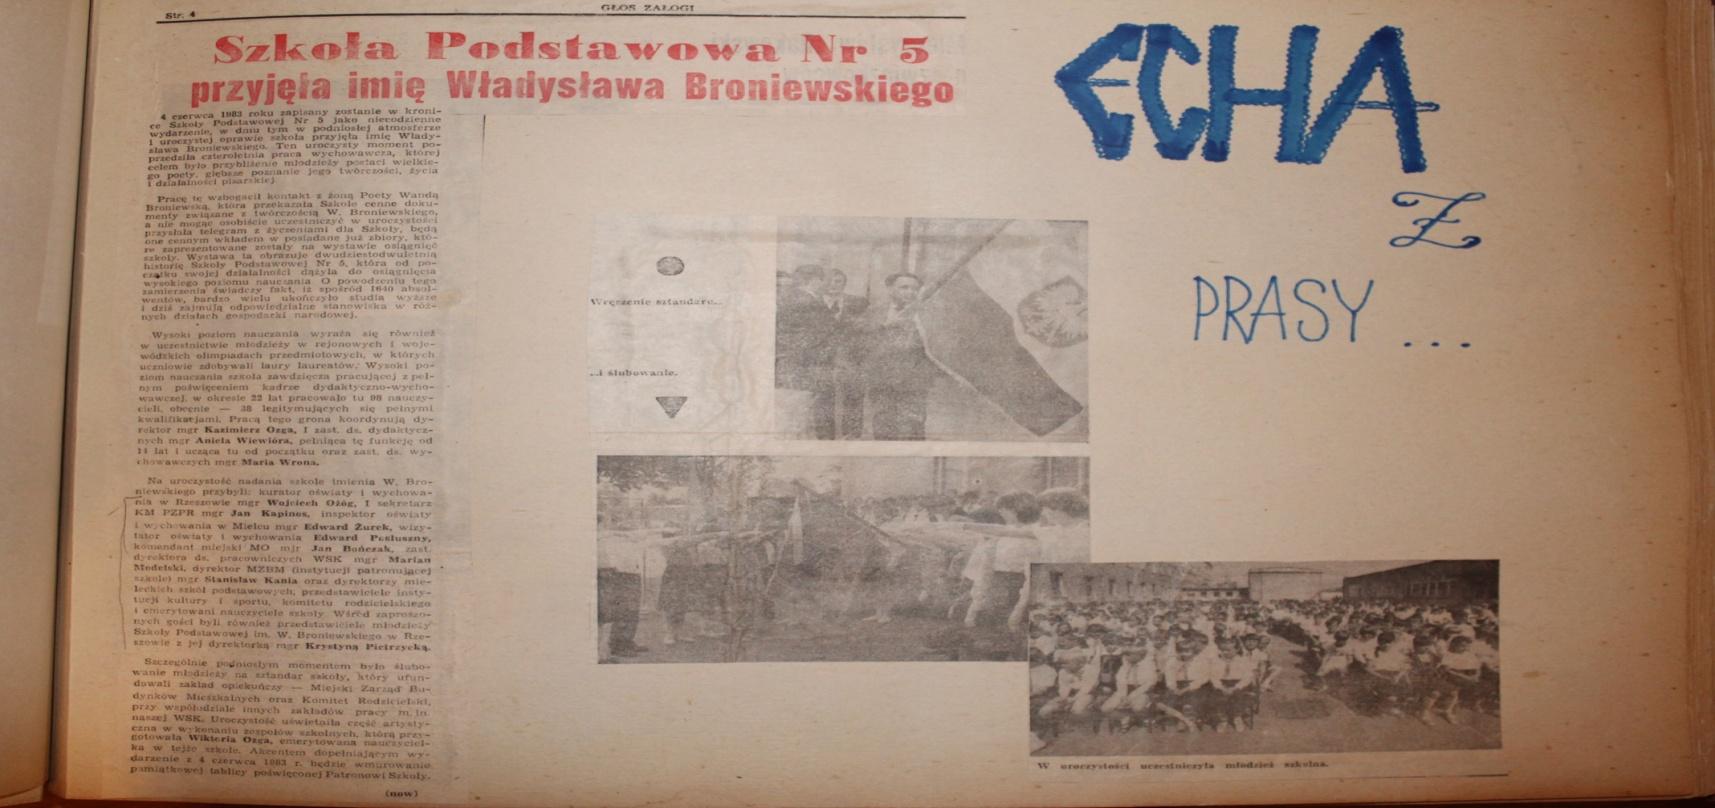 Od roku 1979 Szkoła Podstawowa nr 5 przygotowywała się do przyjęcia imienia Władysława Broniewskiego żołnierza i poety, ale wprowadzenie stanu wojennego pokrzyżowało te plany.